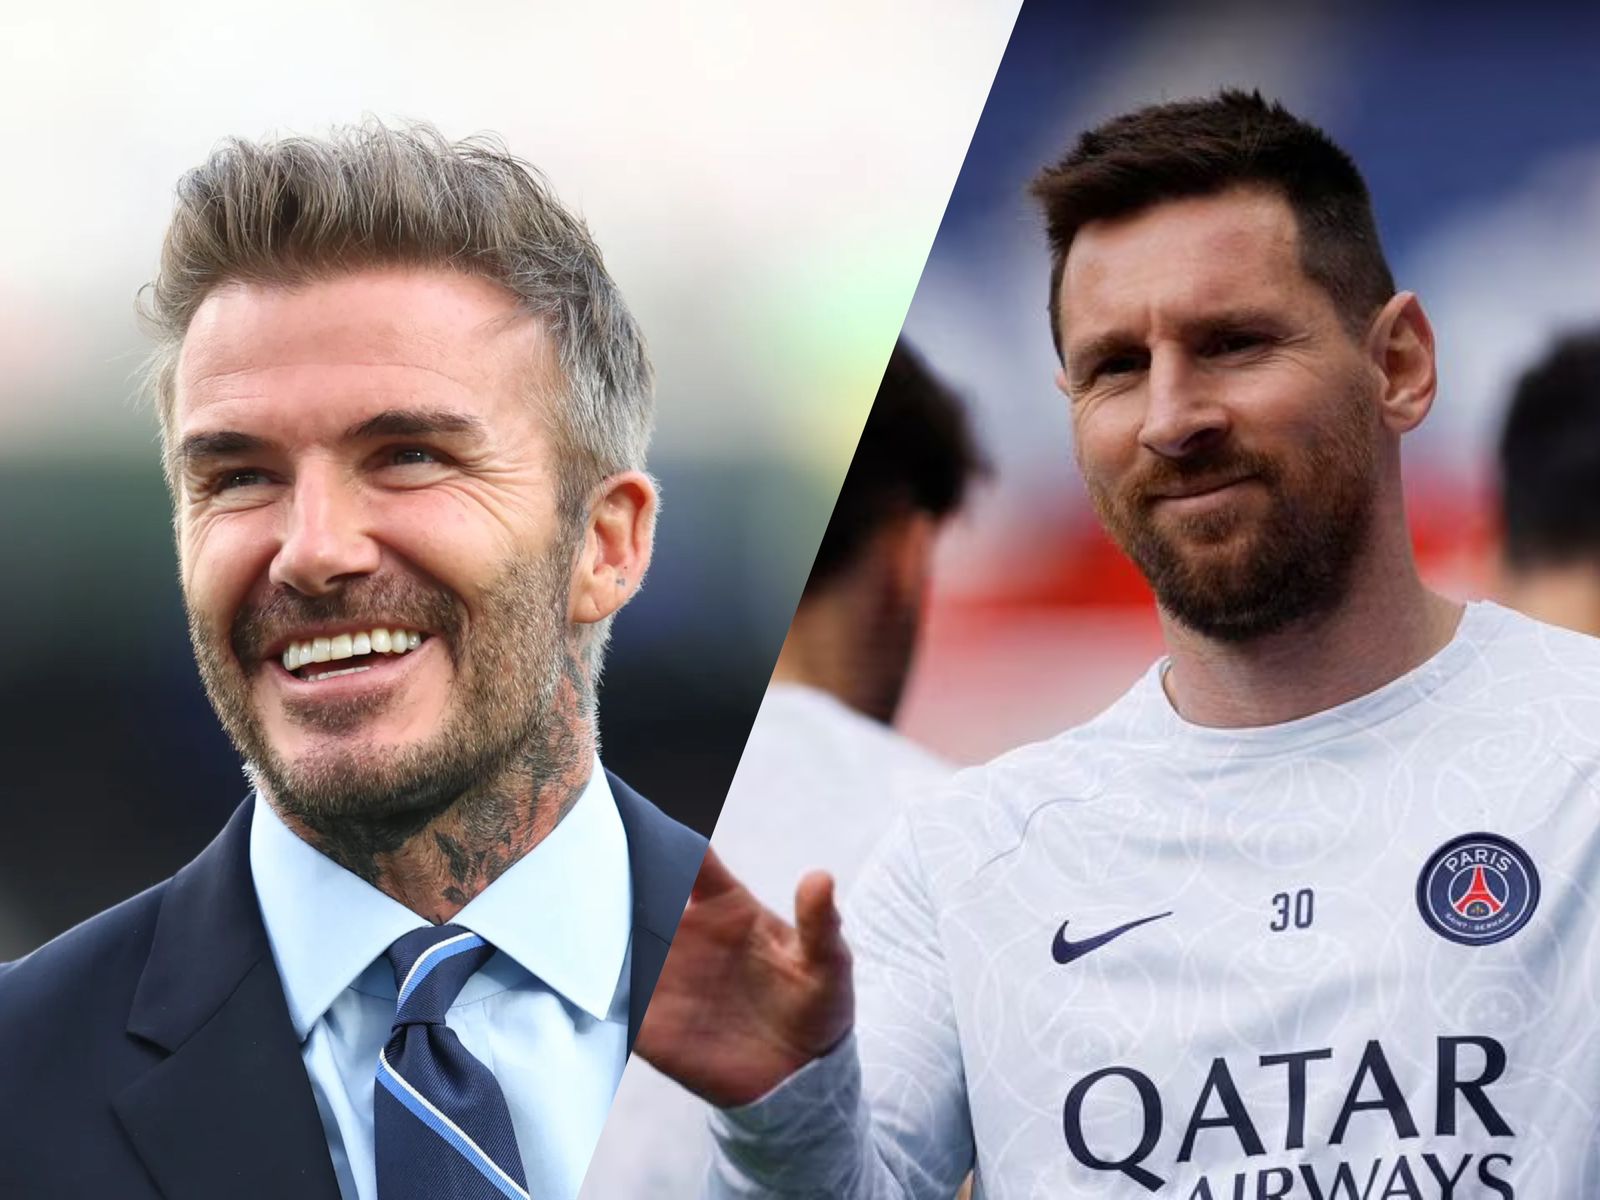 David Beckham: El video premonitorio y cómo logró conquistar a Messi